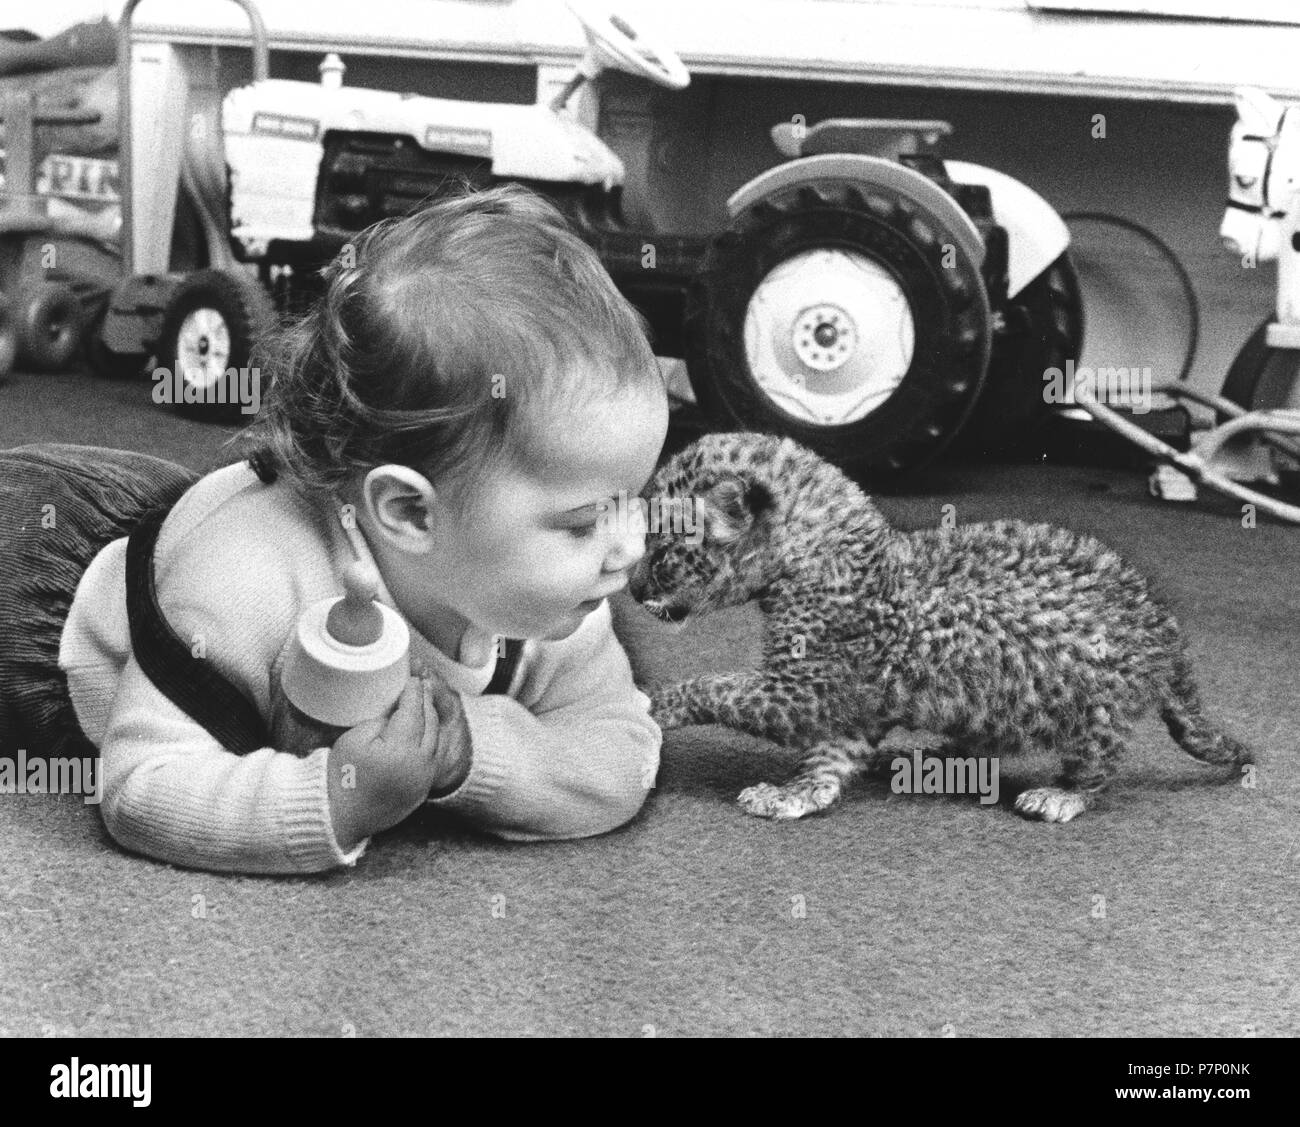 Kind spielt mit Baby Predator, England, Großbritannien Stockfotografie -  Alamy